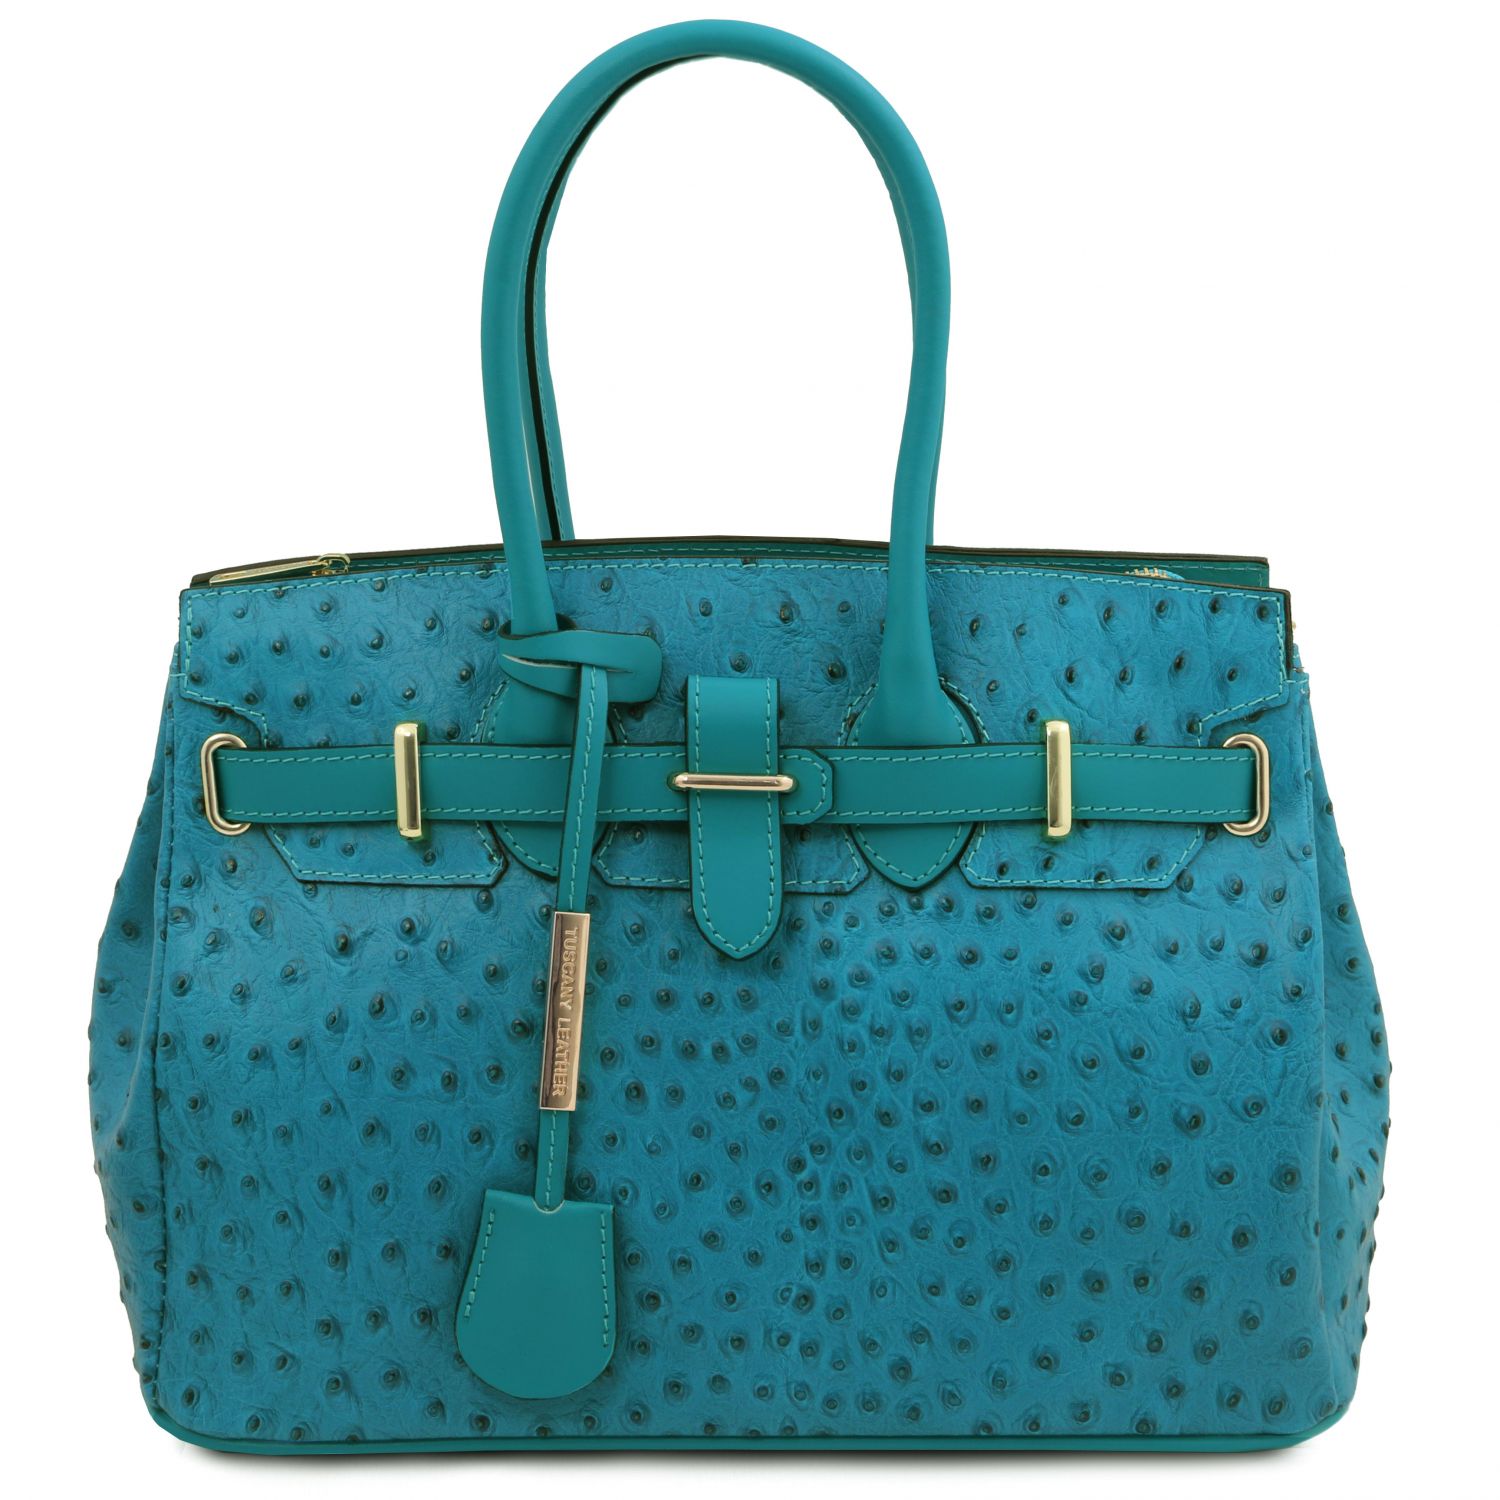 Tuscany Leather TL Bag Handbag